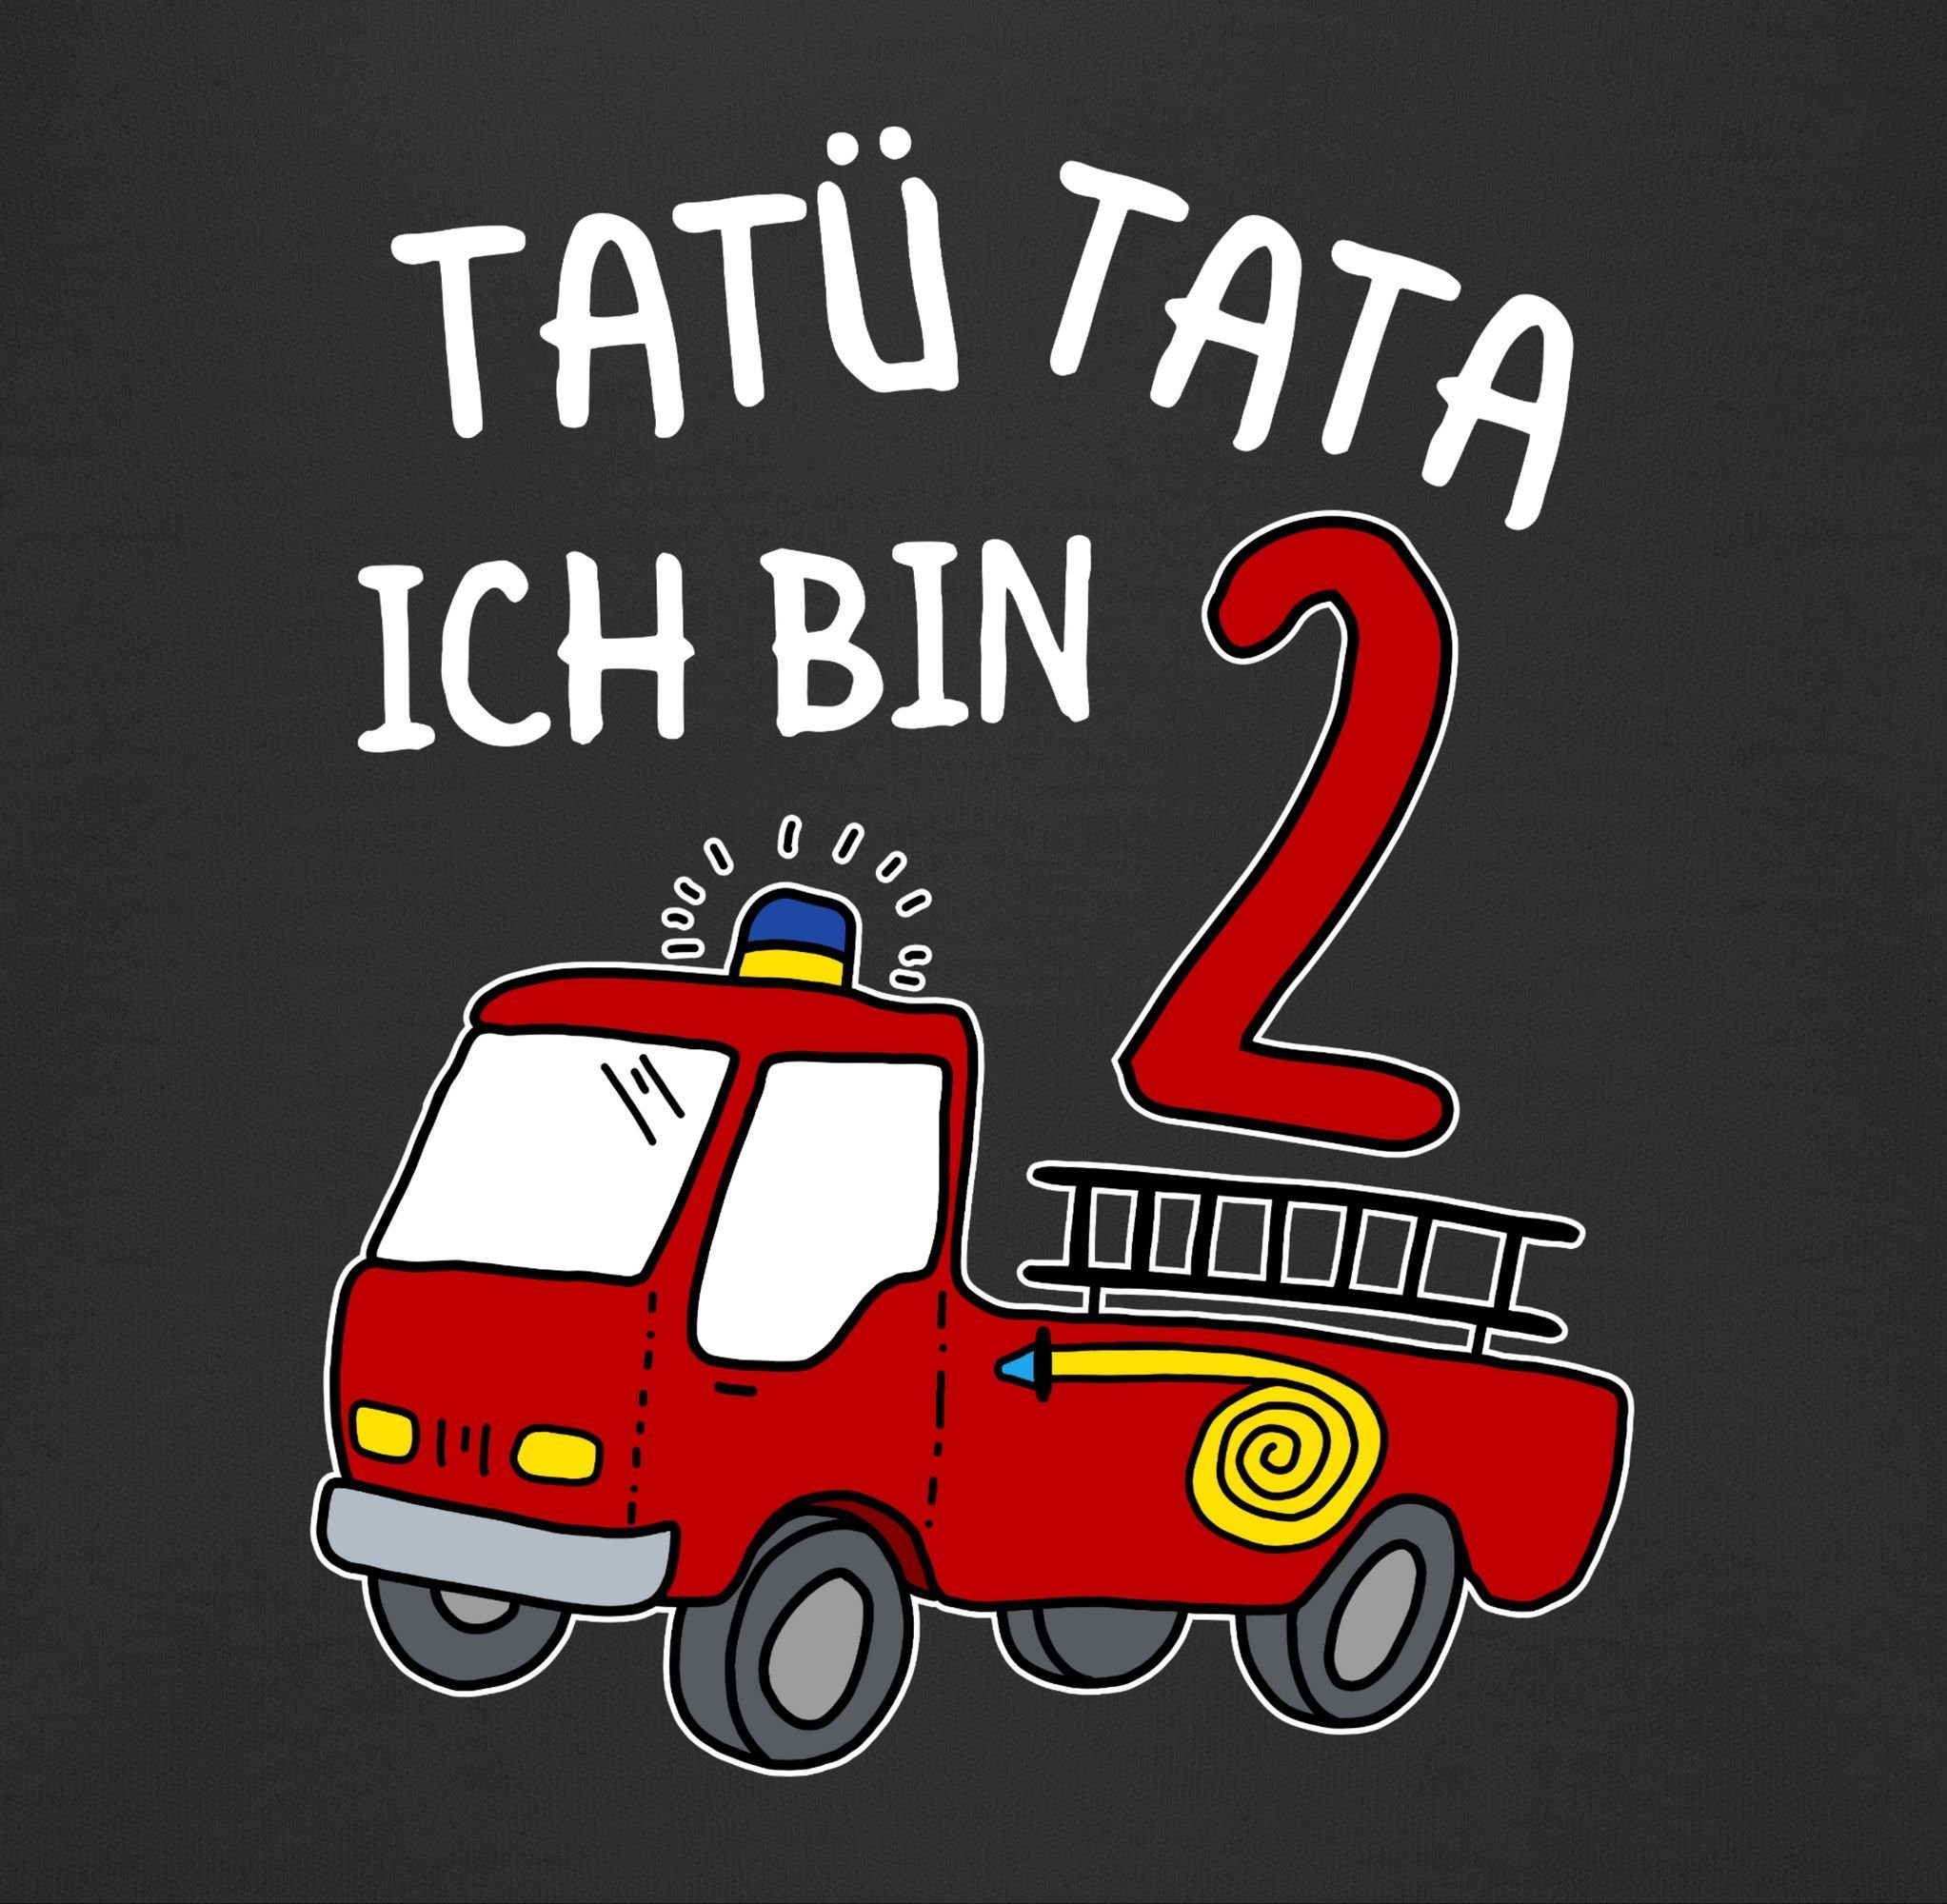 Tata Sweatshirt Geburtstag bin 2 Feuerwehrauto Ich Shirtracer 2. zwei Schwarz Tatü